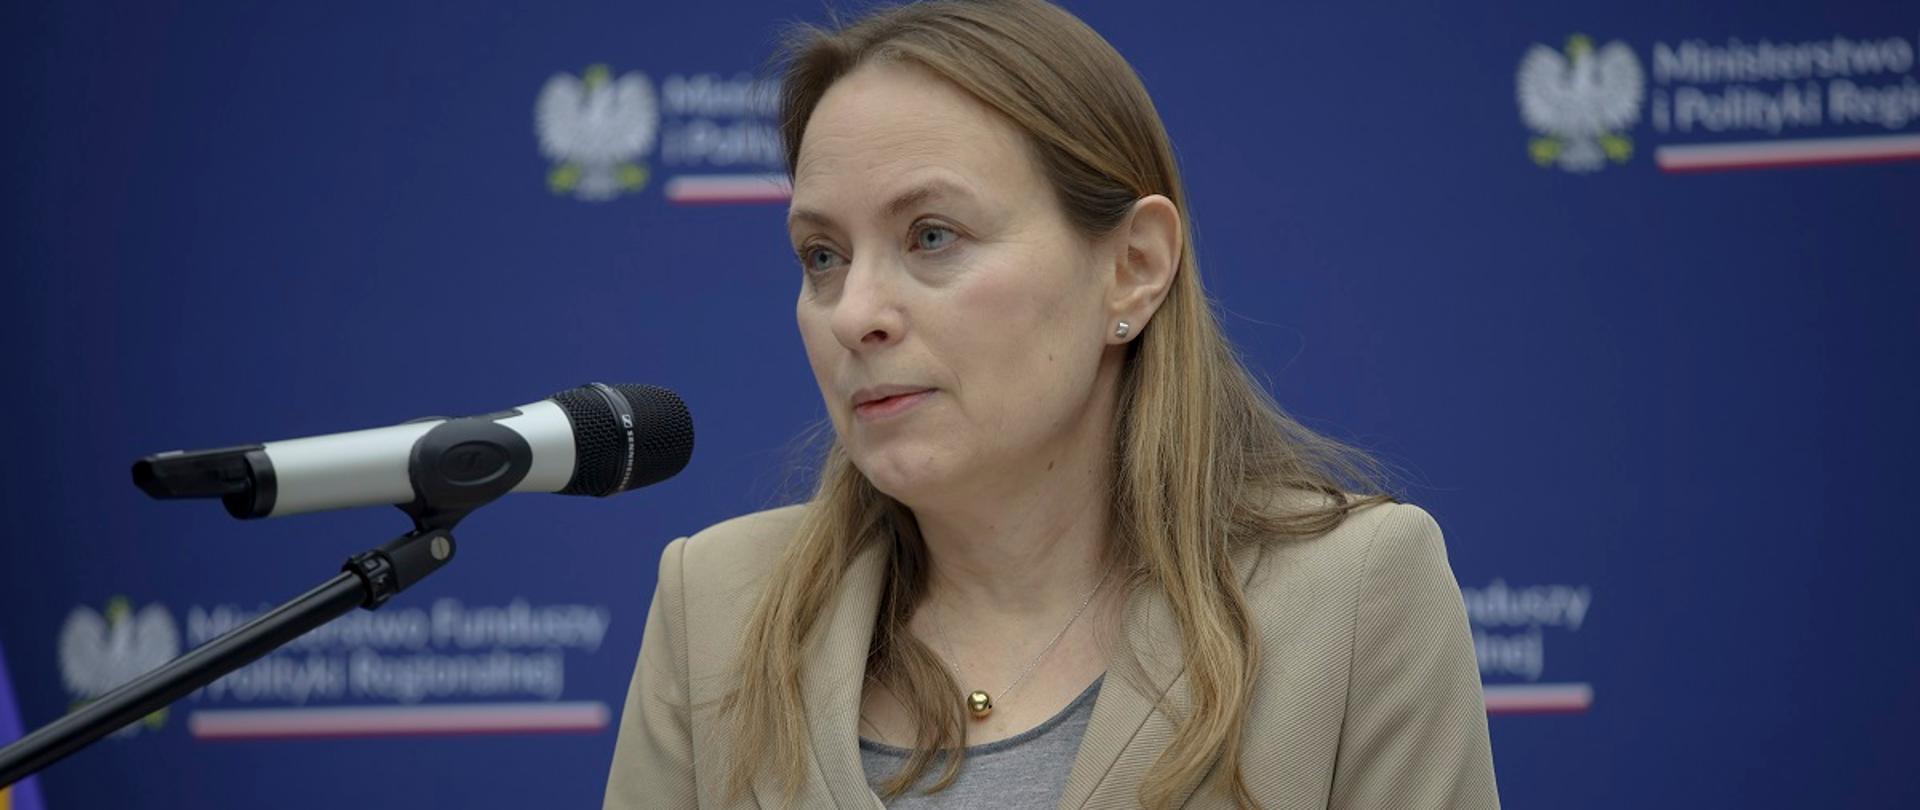  Minister funduszy i polityki regionalnej Katarzyna Pełczyńska-Nałęcz stoi przy mikrofonie, za jej plecami ścianka z logo MFiPR